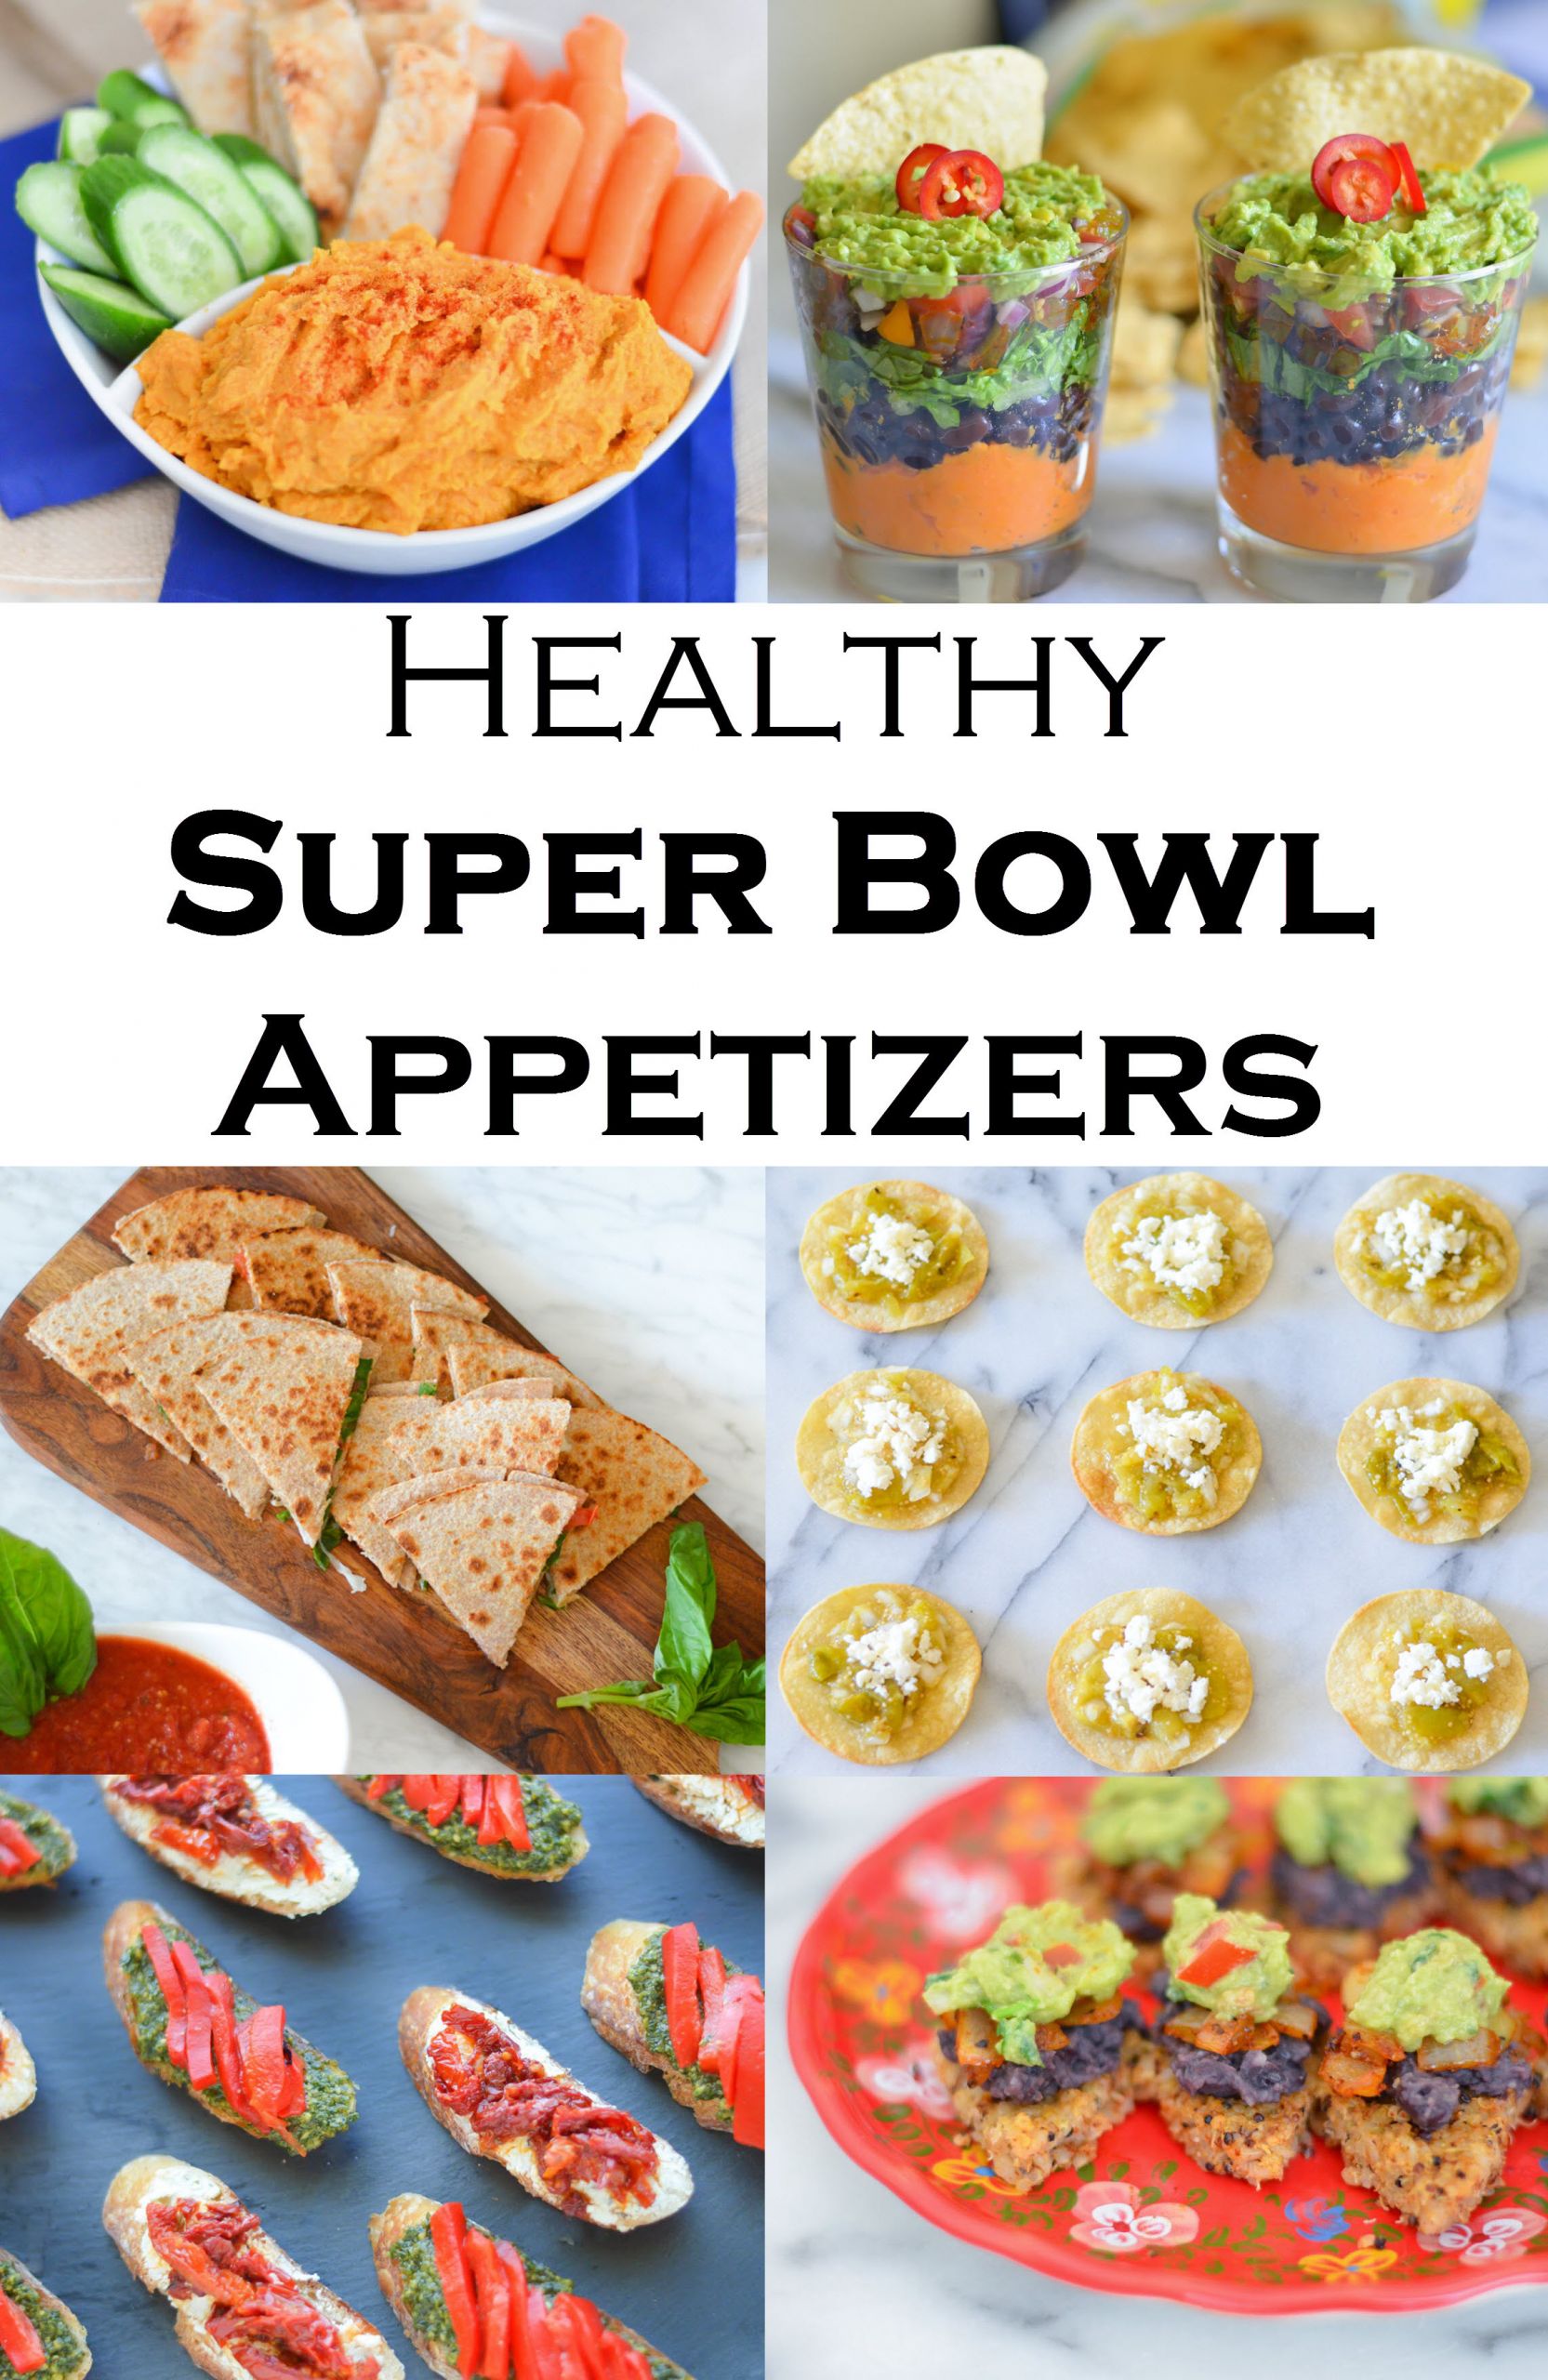 Super Bowl Recipes Healthy
 Healthy Super Bowl Recipes For Everyone